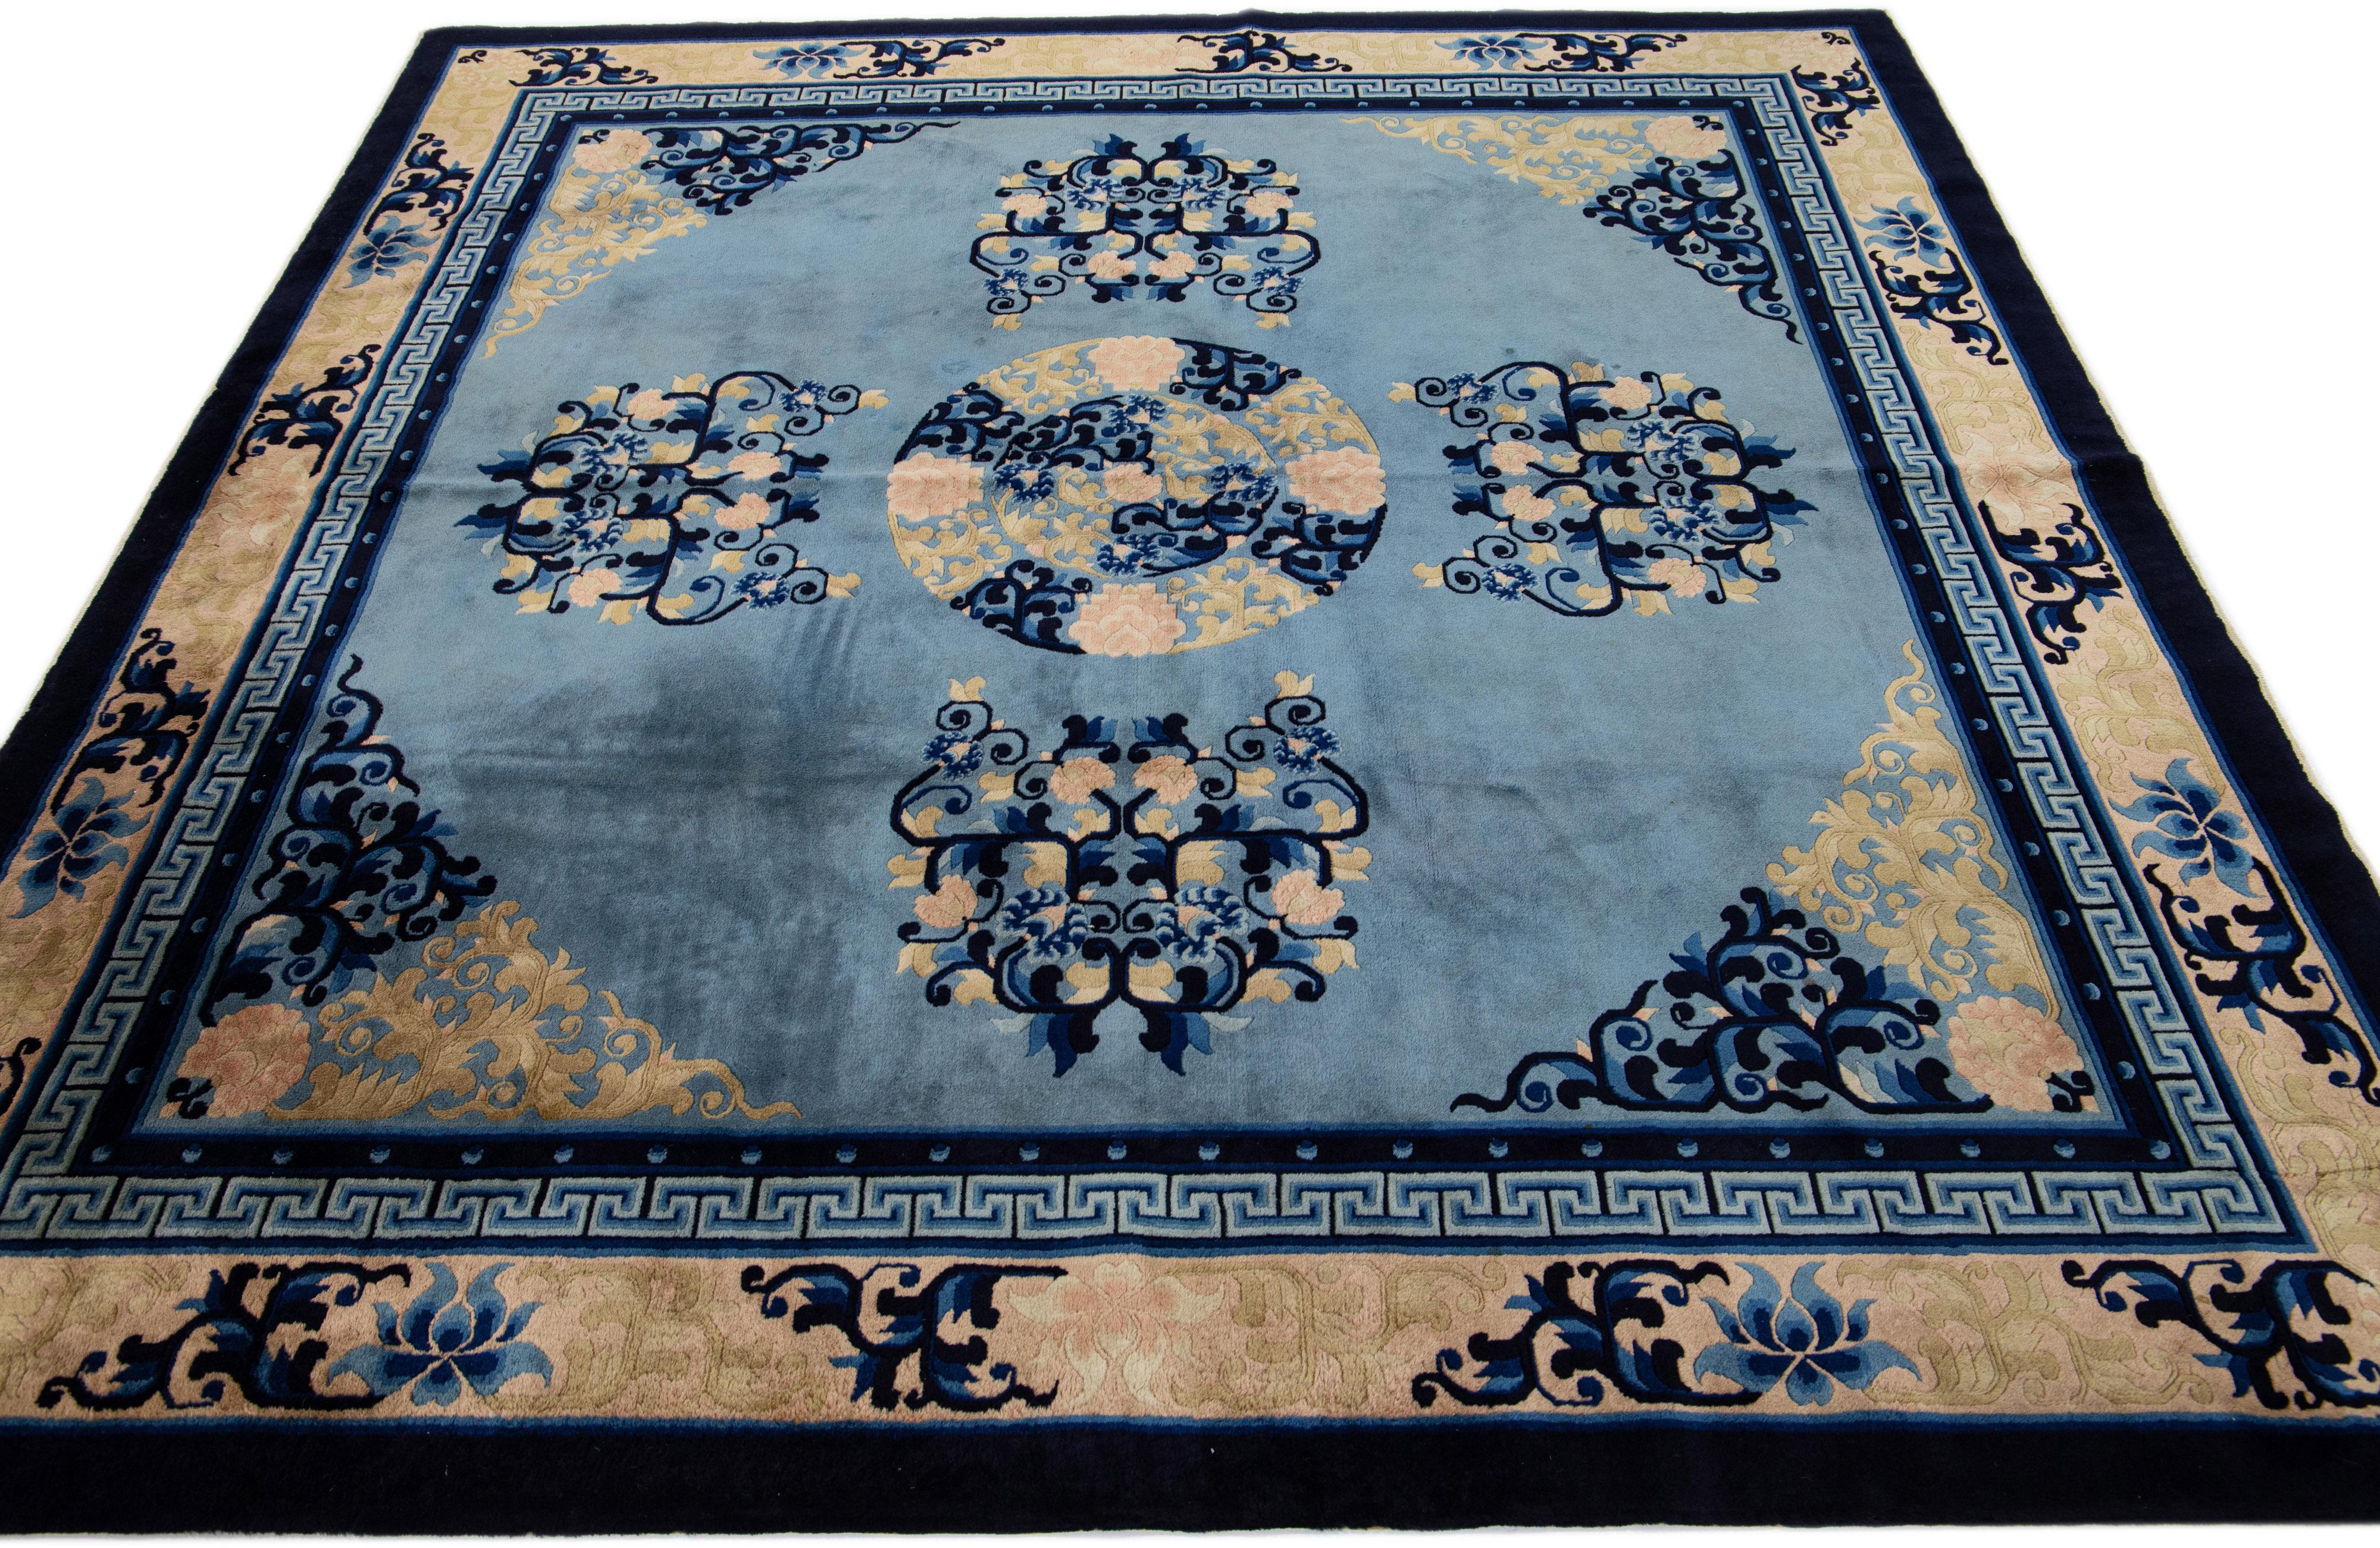 Dieser luxuriöse antike chinesische Wollteppich aus Peking hat ein blaues Feld mit einem gestalteten Rahmen und goldenen, pfirsichfarbenen und schwarzen Akzenten in einem wunderschönen chinesischen Blumenmuster.

Dieser Teppich misst: 7'2